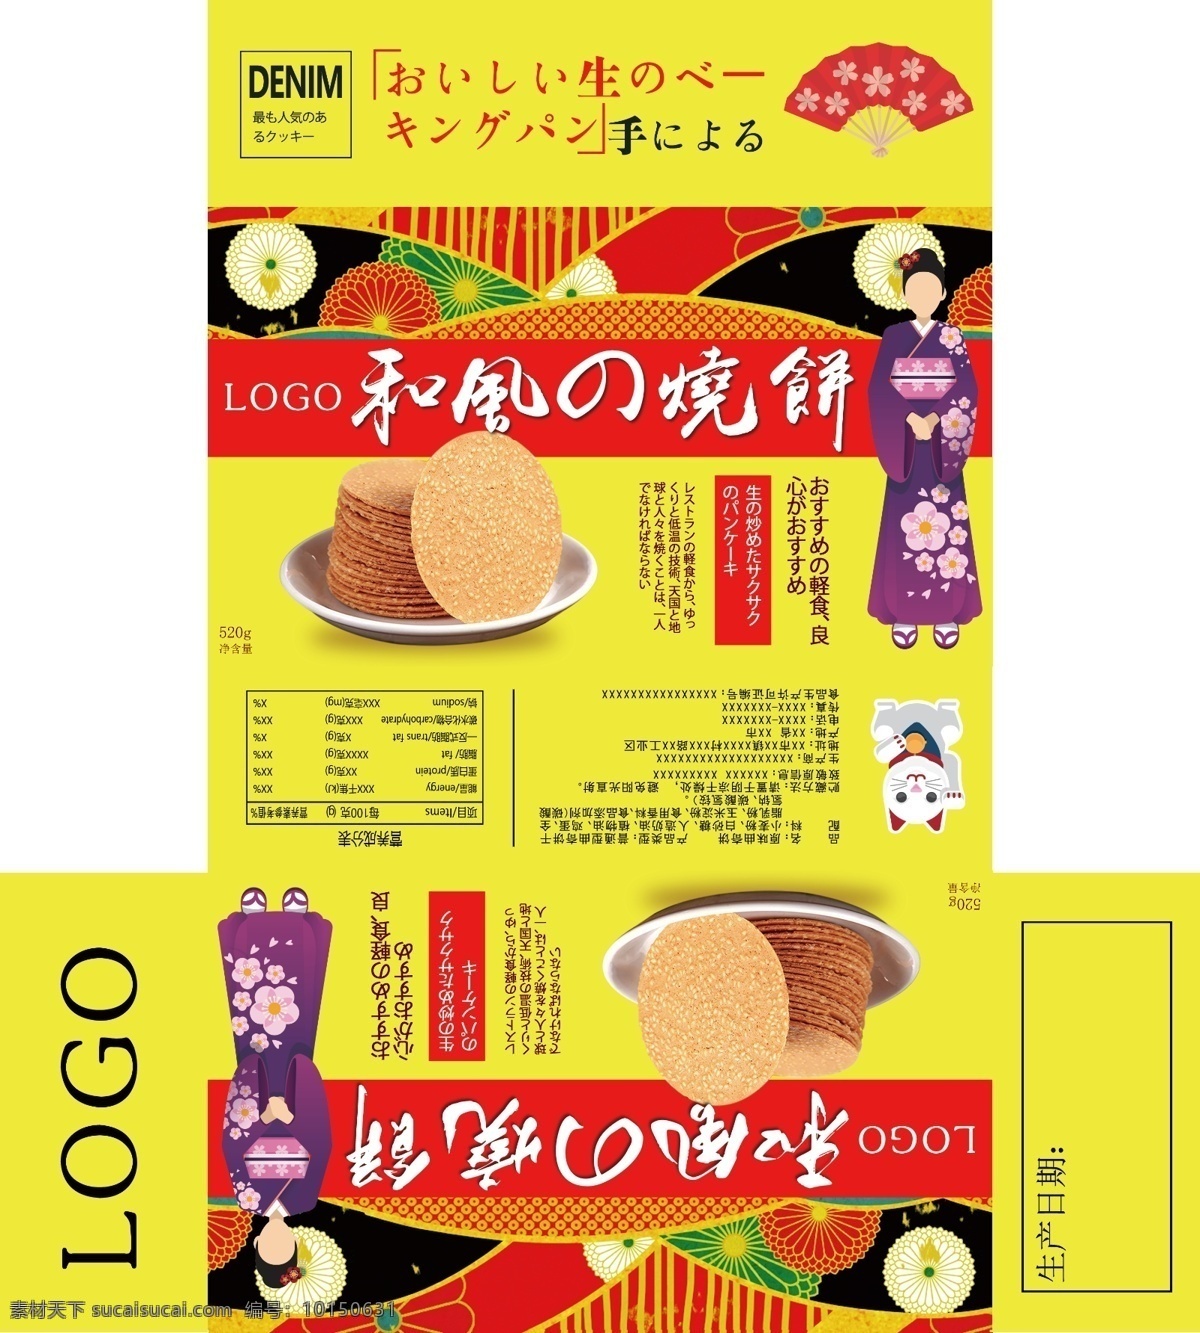 休闲食品 烤 煎饼 盒子 食品 饼干 日式 黄色 红色 和服 烧饼